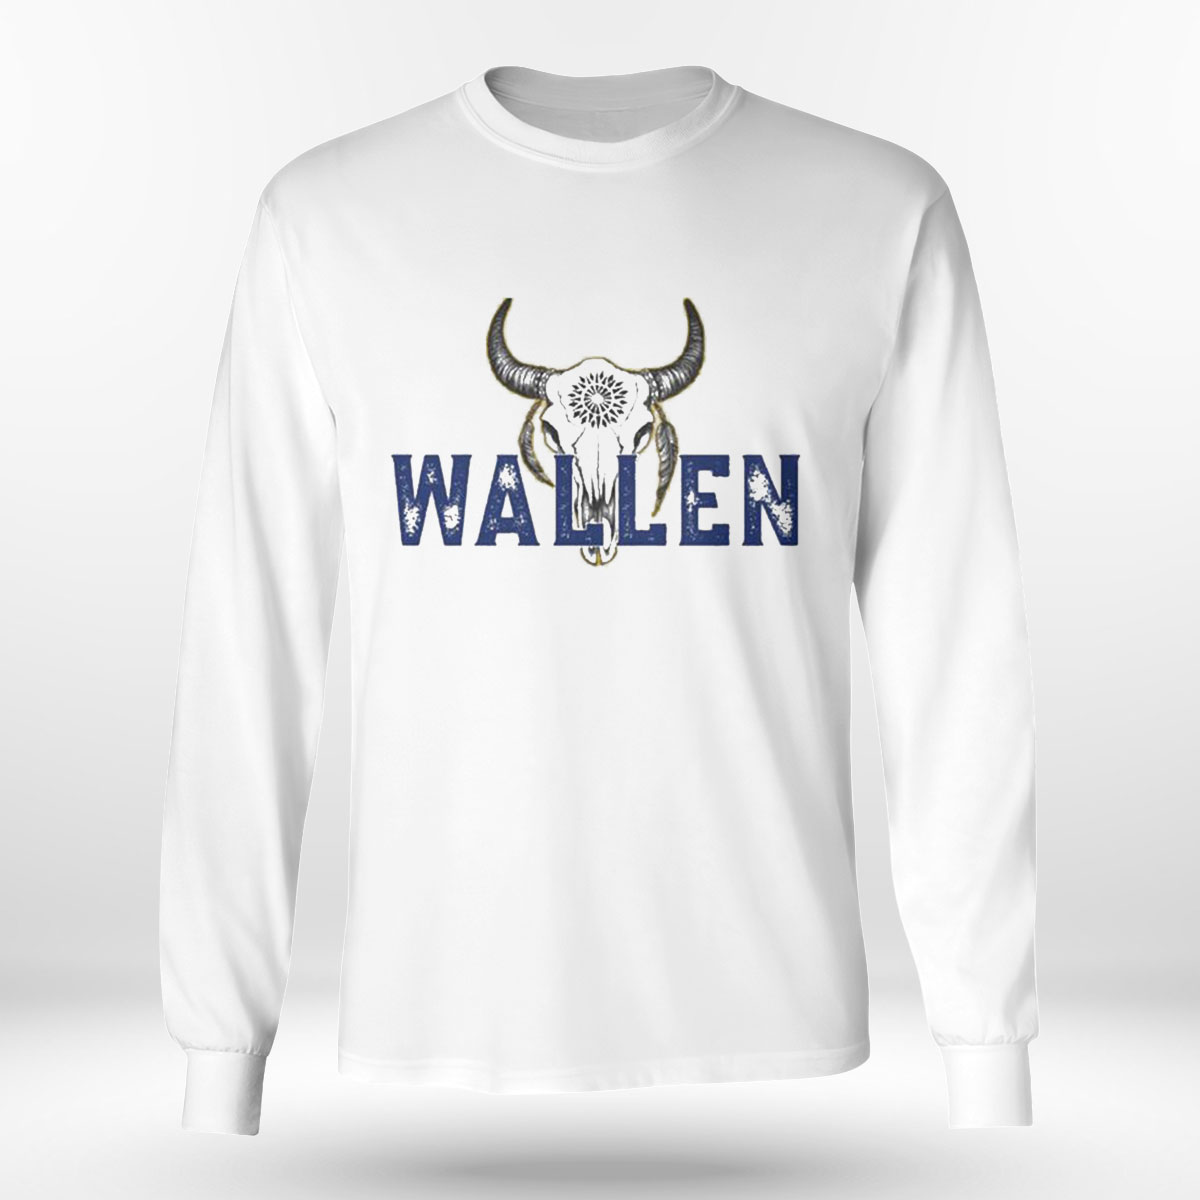 Wallen T-shirt